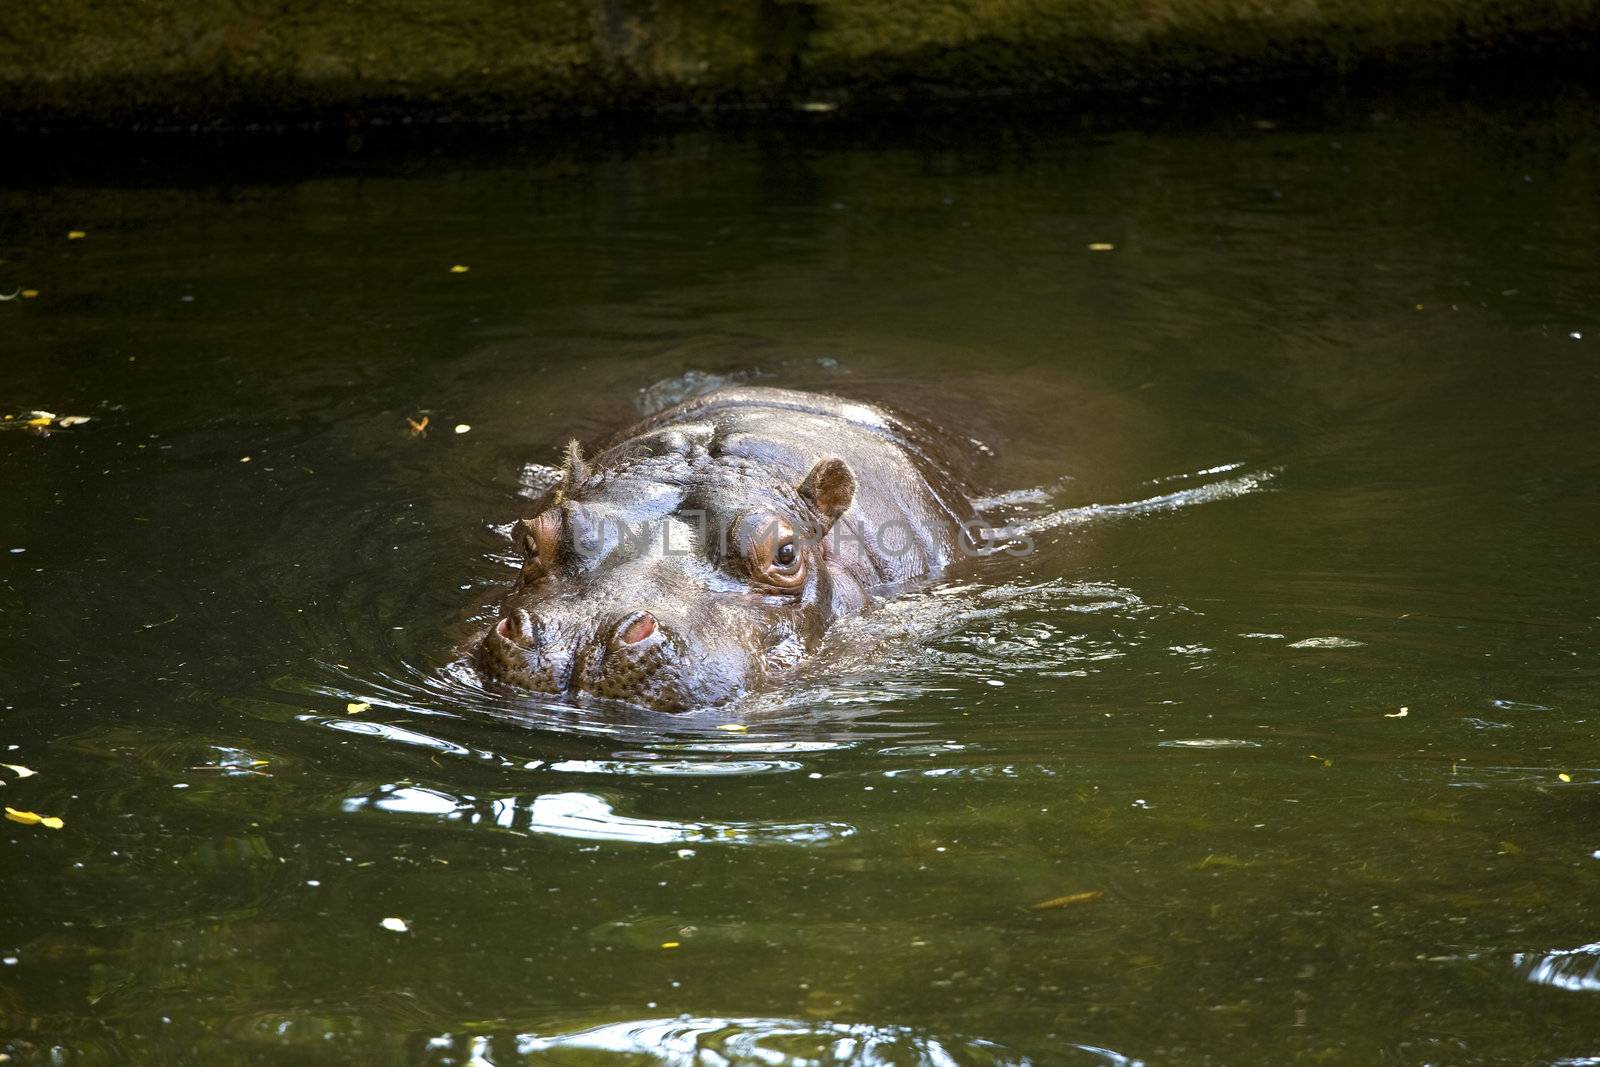 Hippo sticking head above water by jarenwicklund